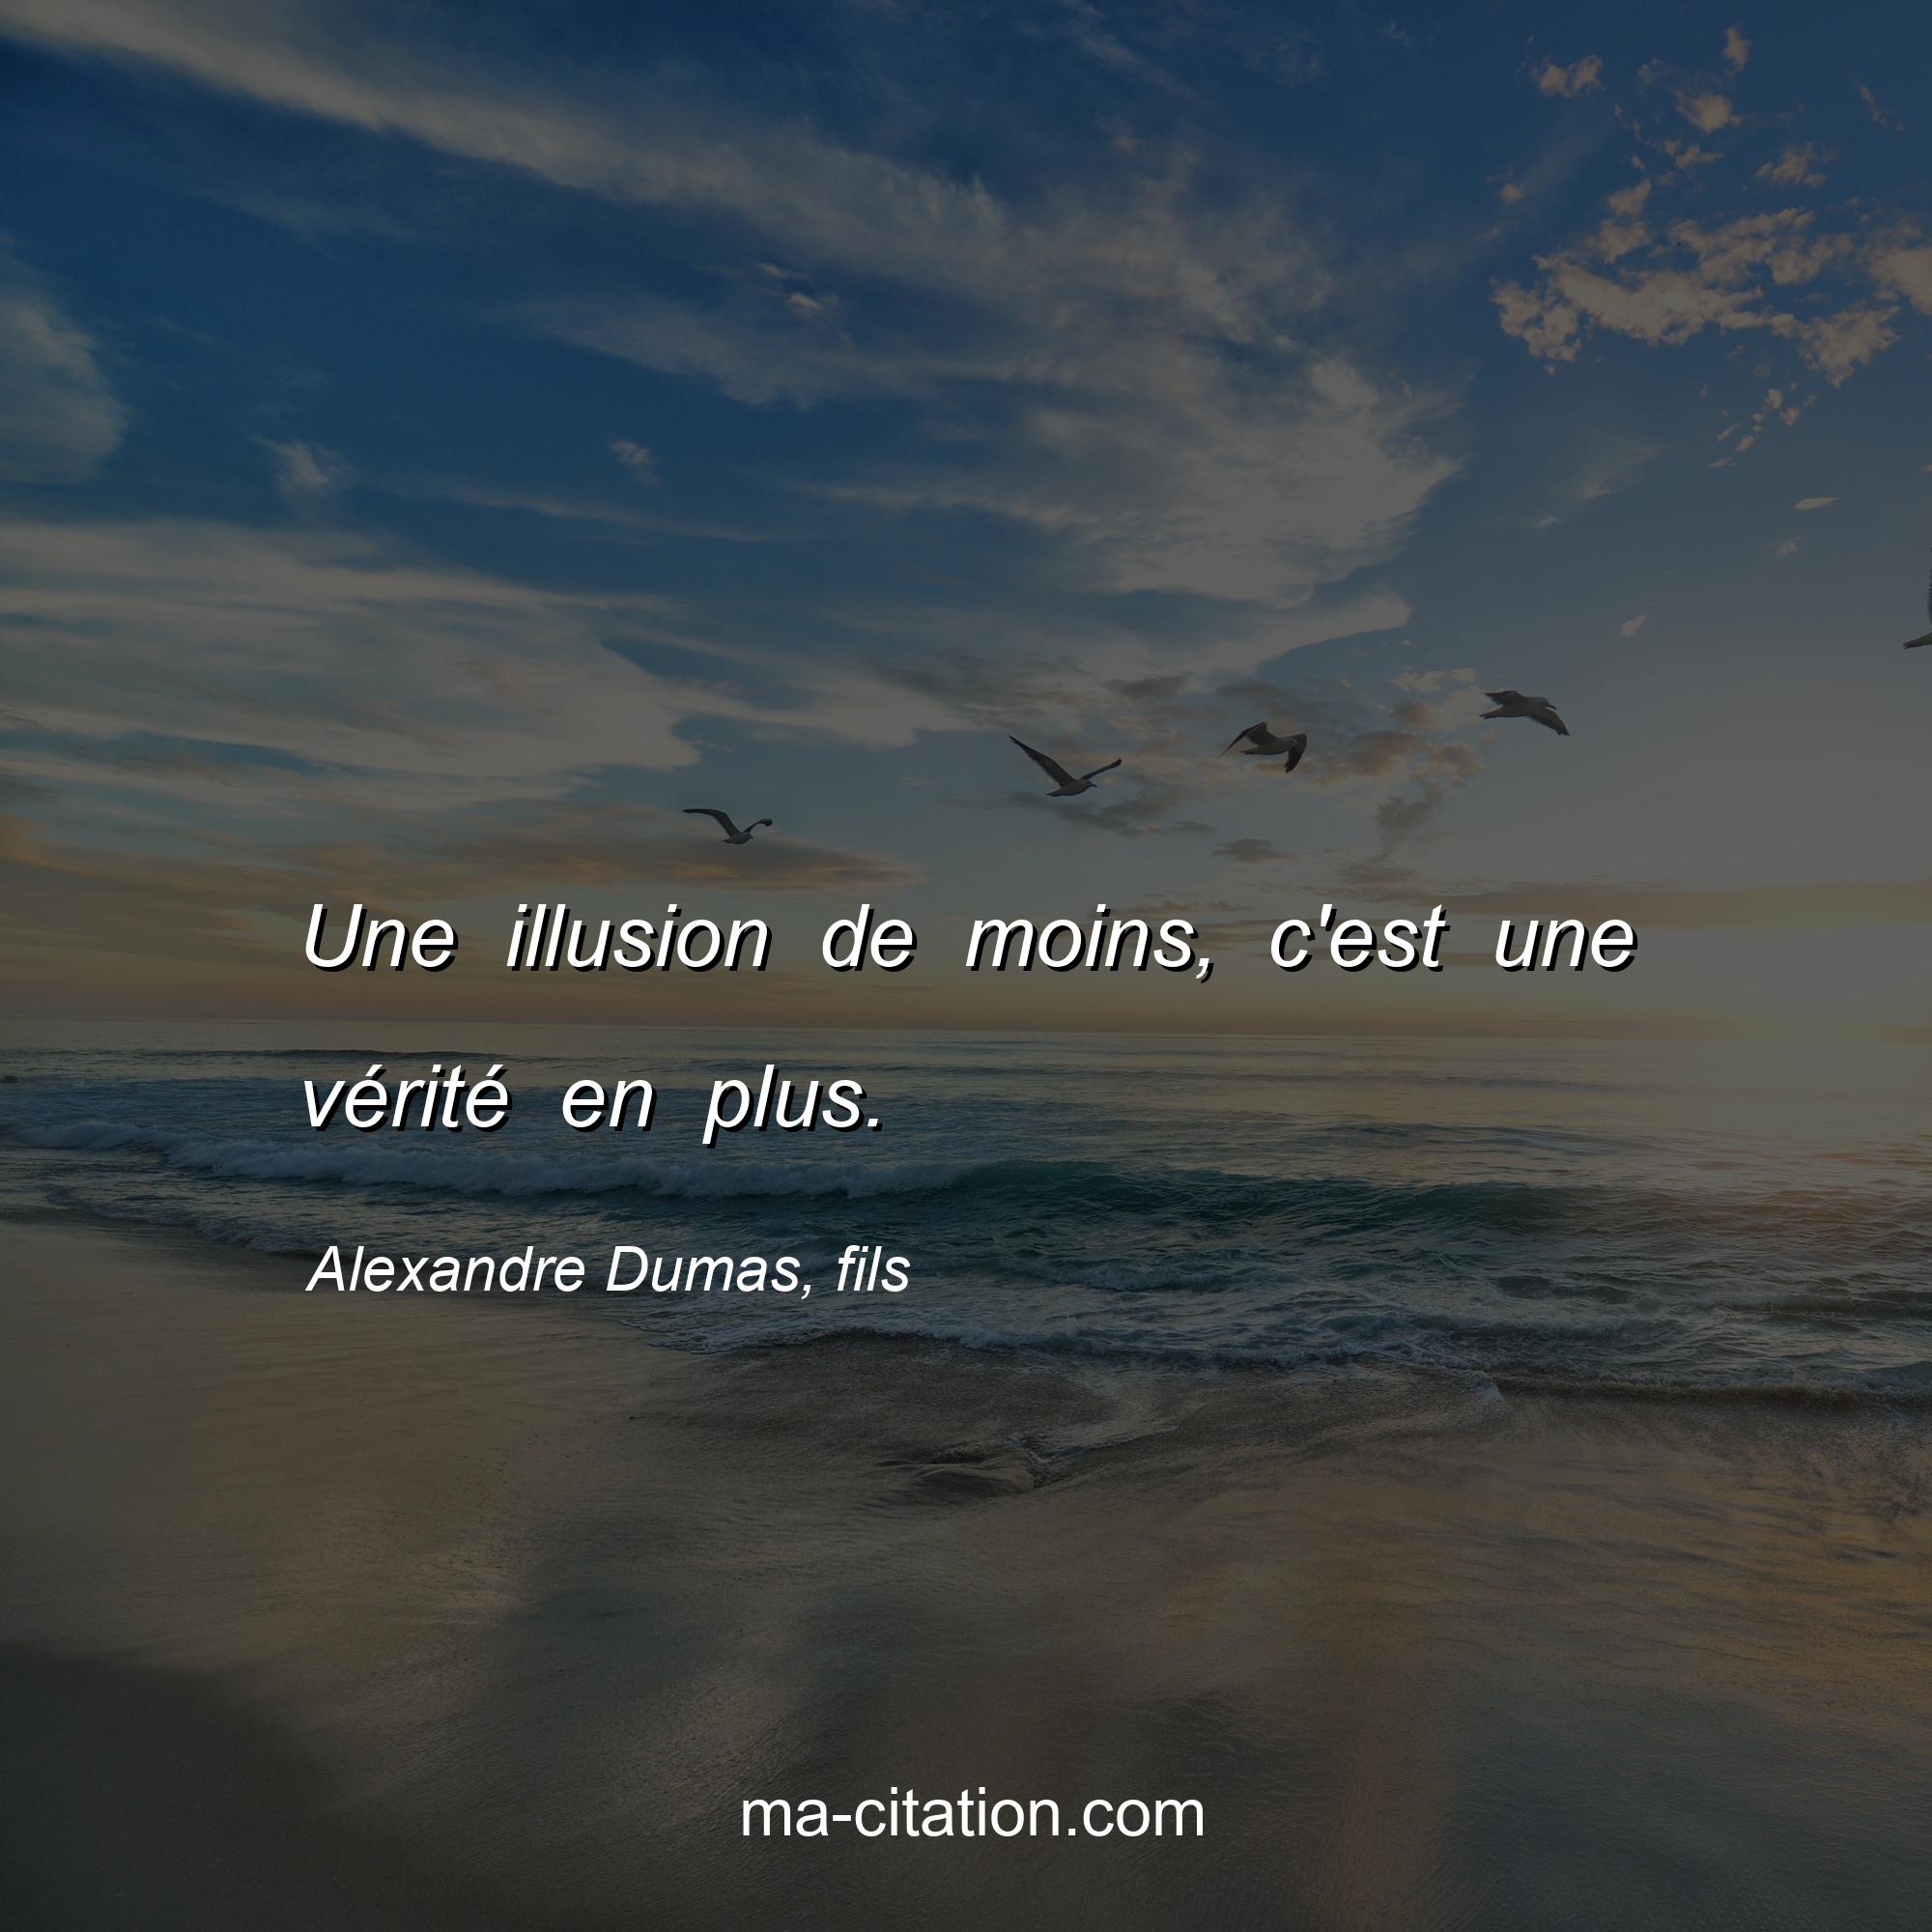 Alexandre Dumas, fils : Une illusion de moins, c'est une vérité en plus.